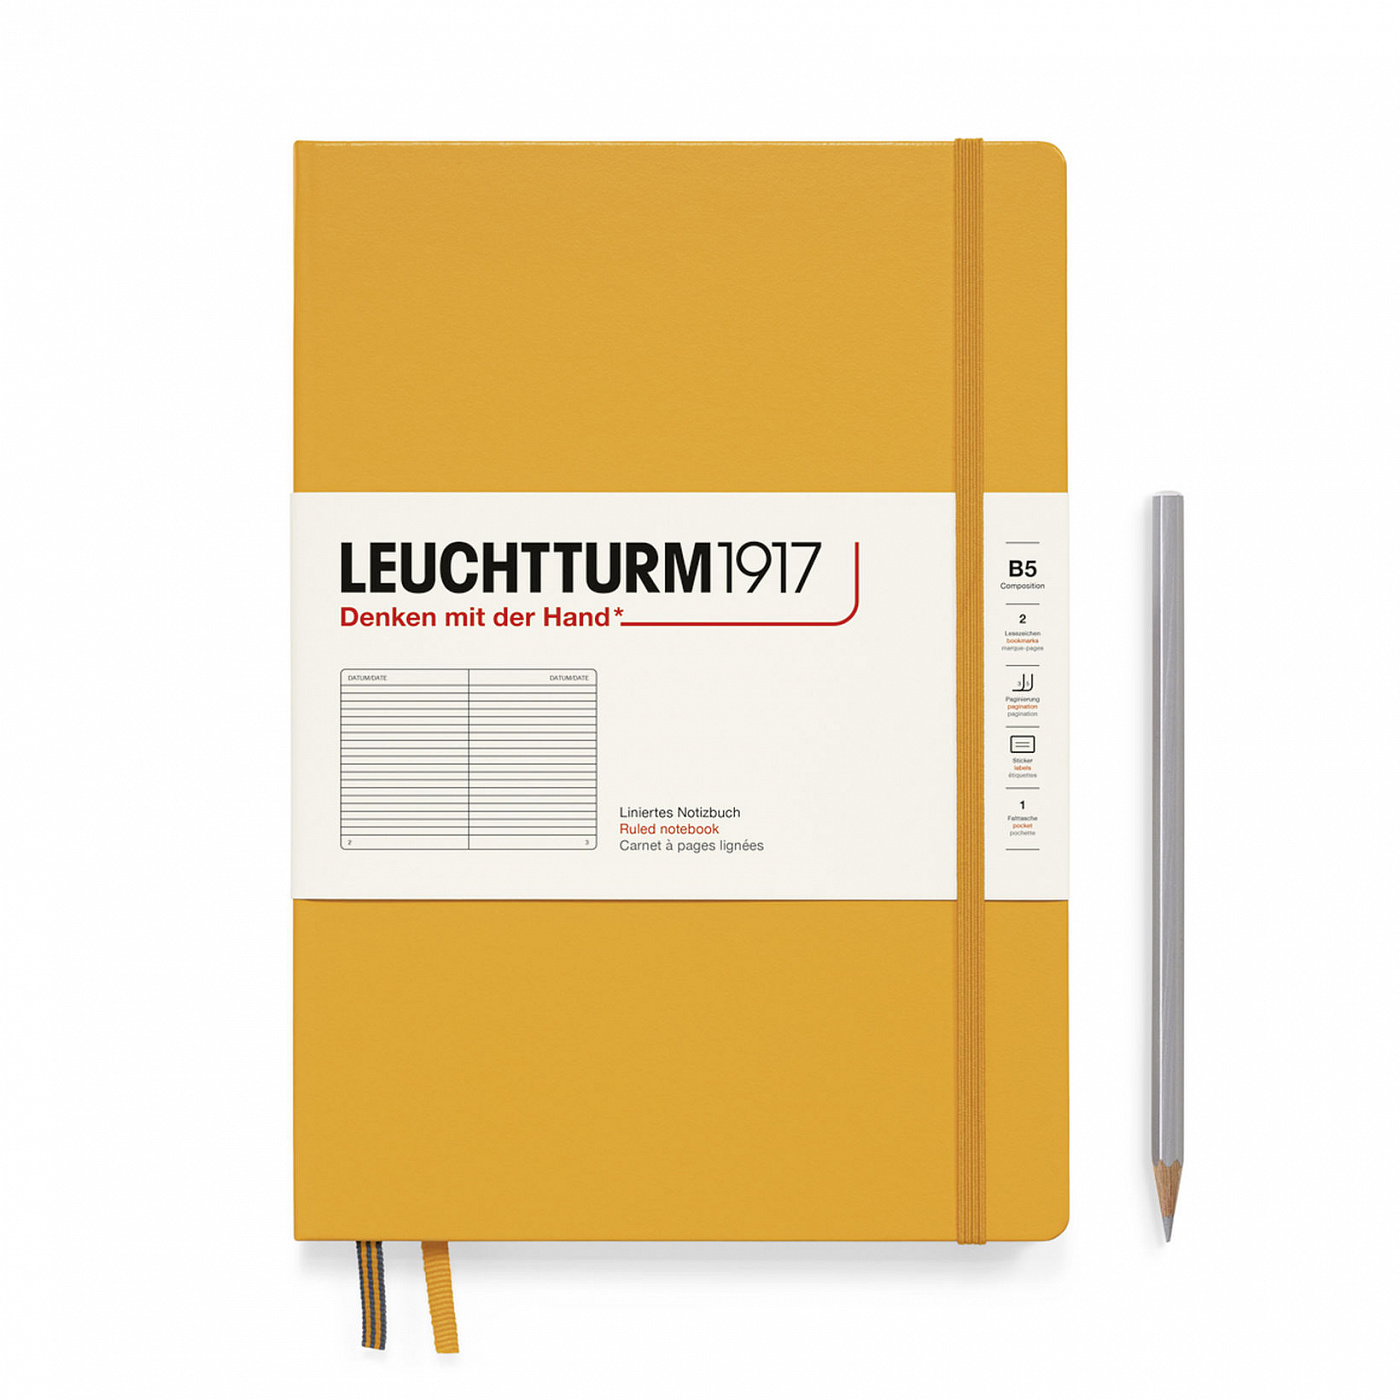 Блокнот влинейку Leuchtturm1917 Composition B5 109 л, твердая обложка Восходящее Солнце блокнот на скрепке в клетку россия формат а6 16 листов